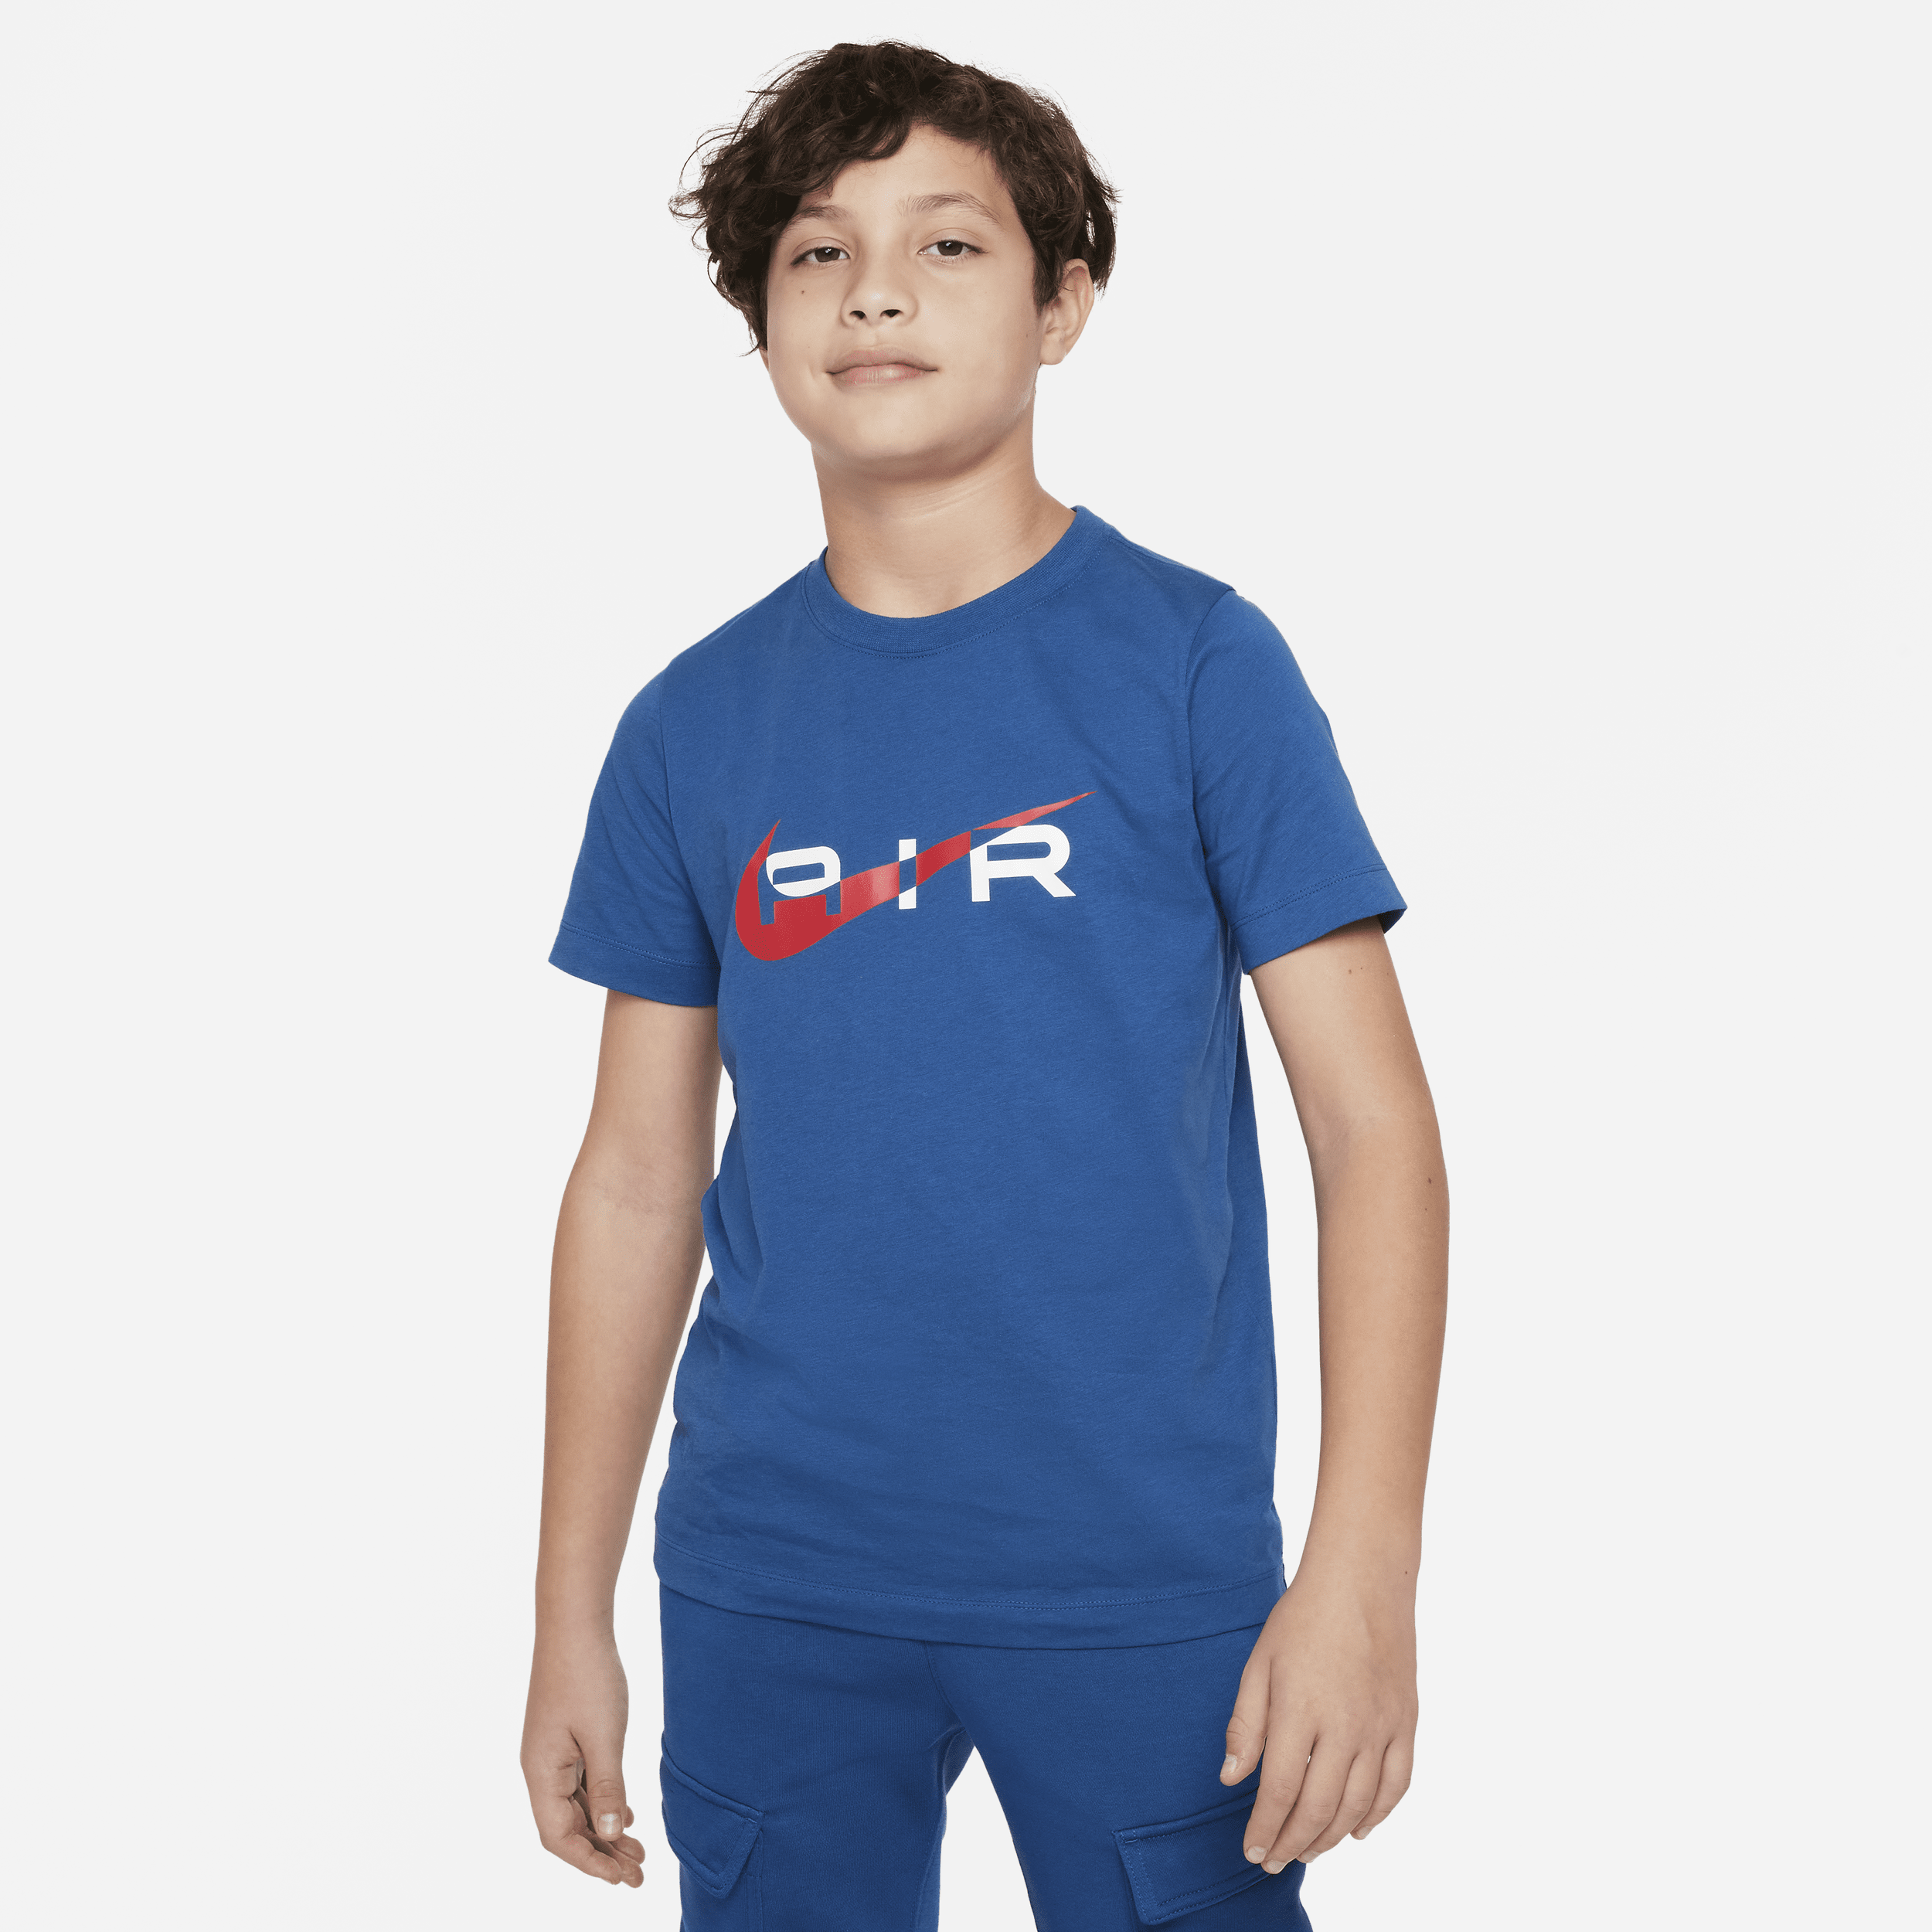 Nike Air T-shirt voor jongens Blauw